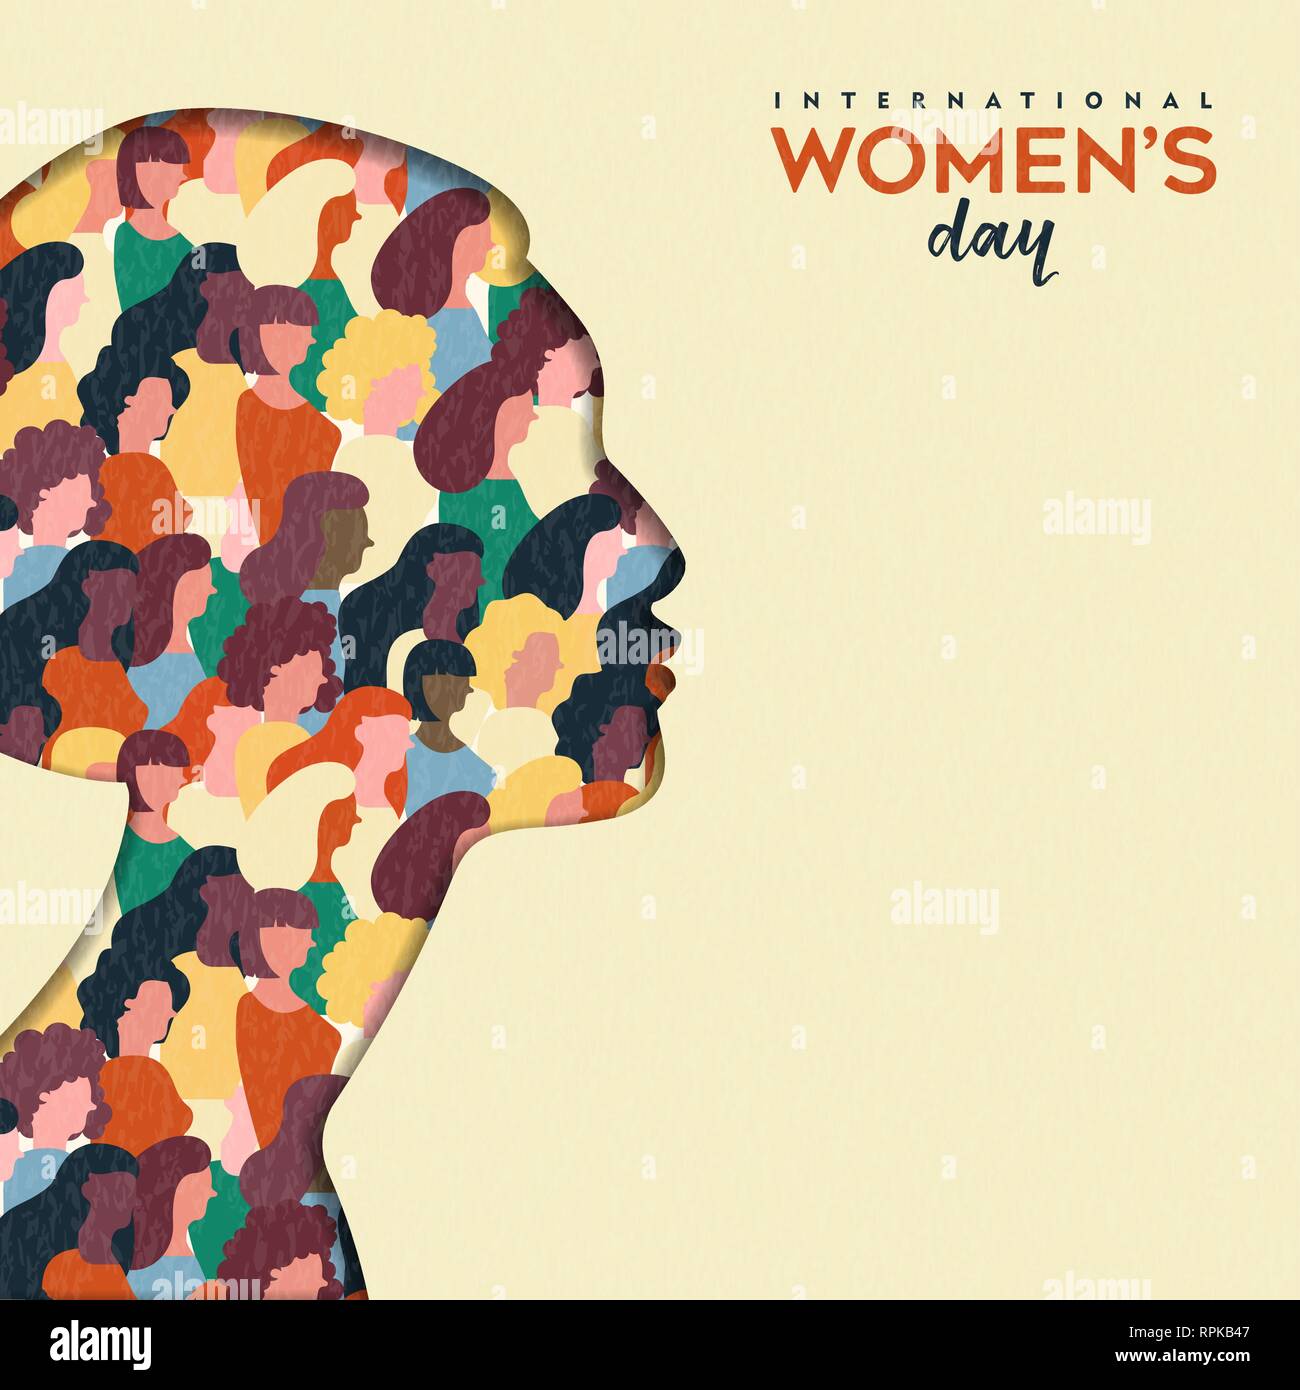 Happy Tag der Frauen Abbildung. Papier schneiden mädchen silhouette Ausschnitt mit Frauen Gruppe Inside, weiblichen Publikum für gleiche Rechte März oder friedlichen Protest conce Stock Vektor